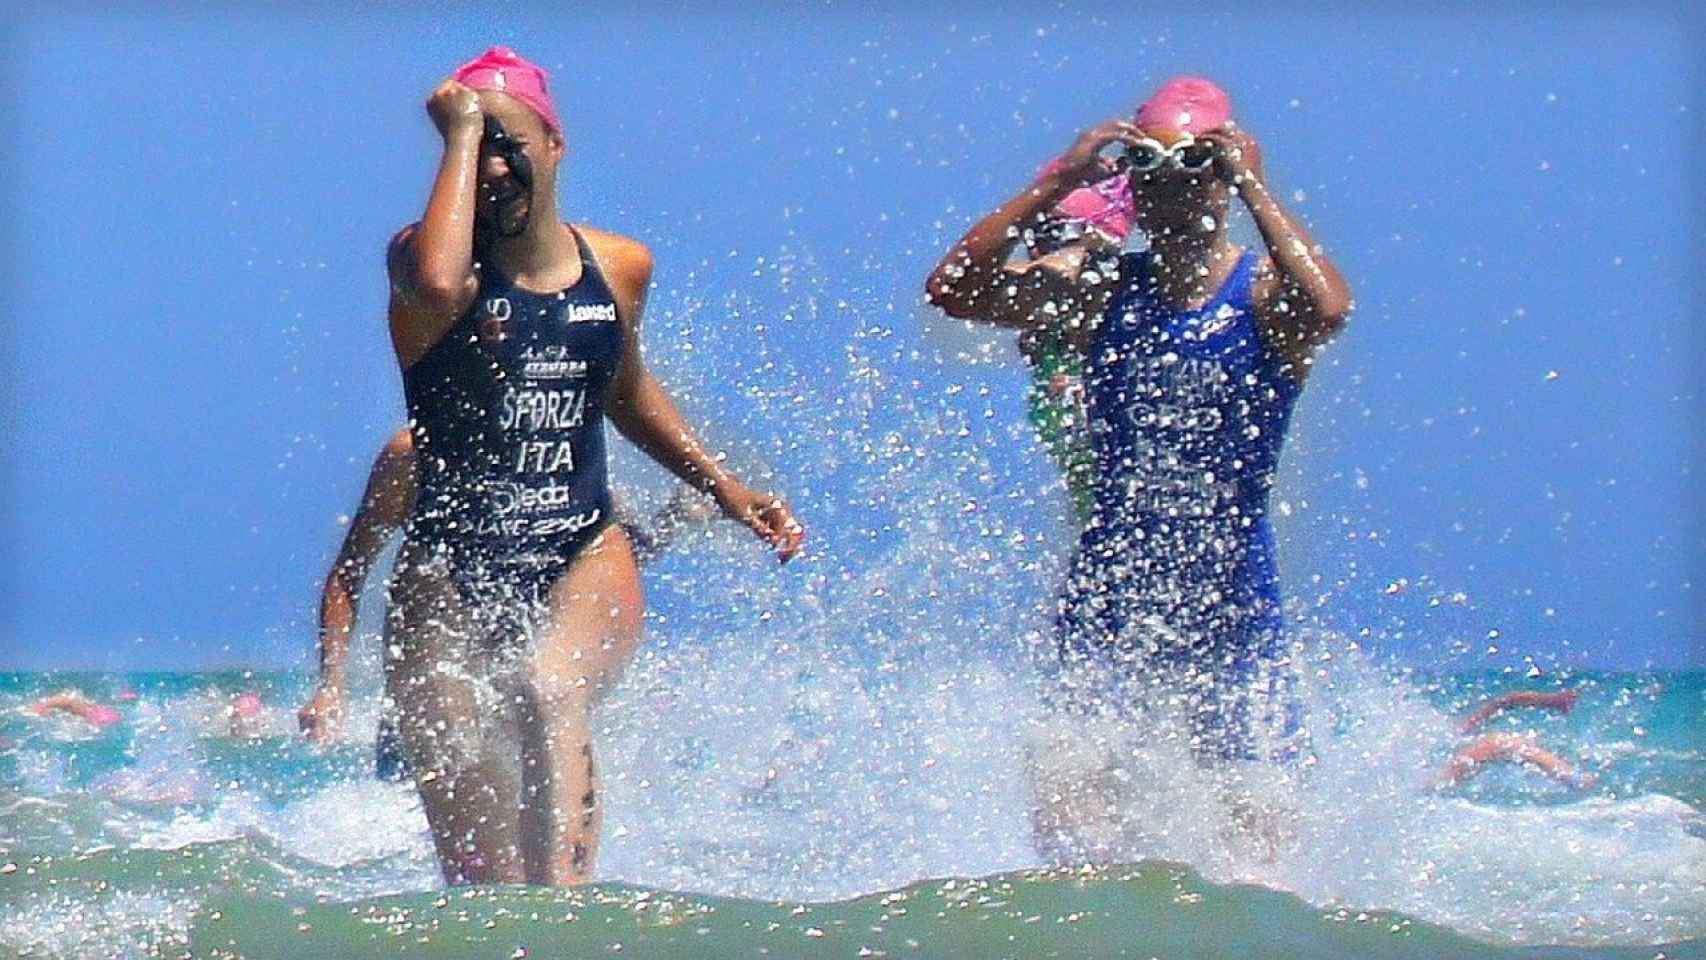 Nadadoras saliendo del mar en una competición